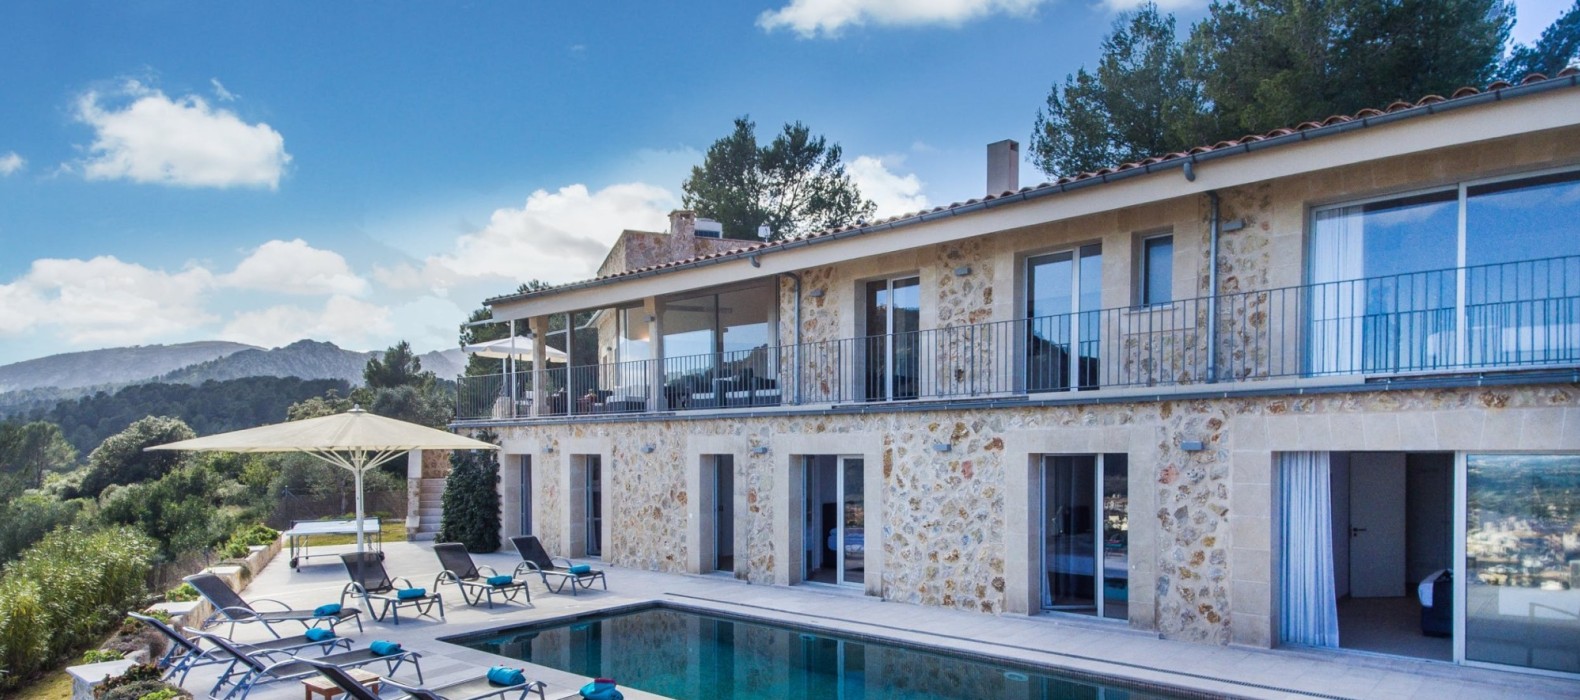 Exterior villa pool view of Casa Dulce Vista in Mallorca